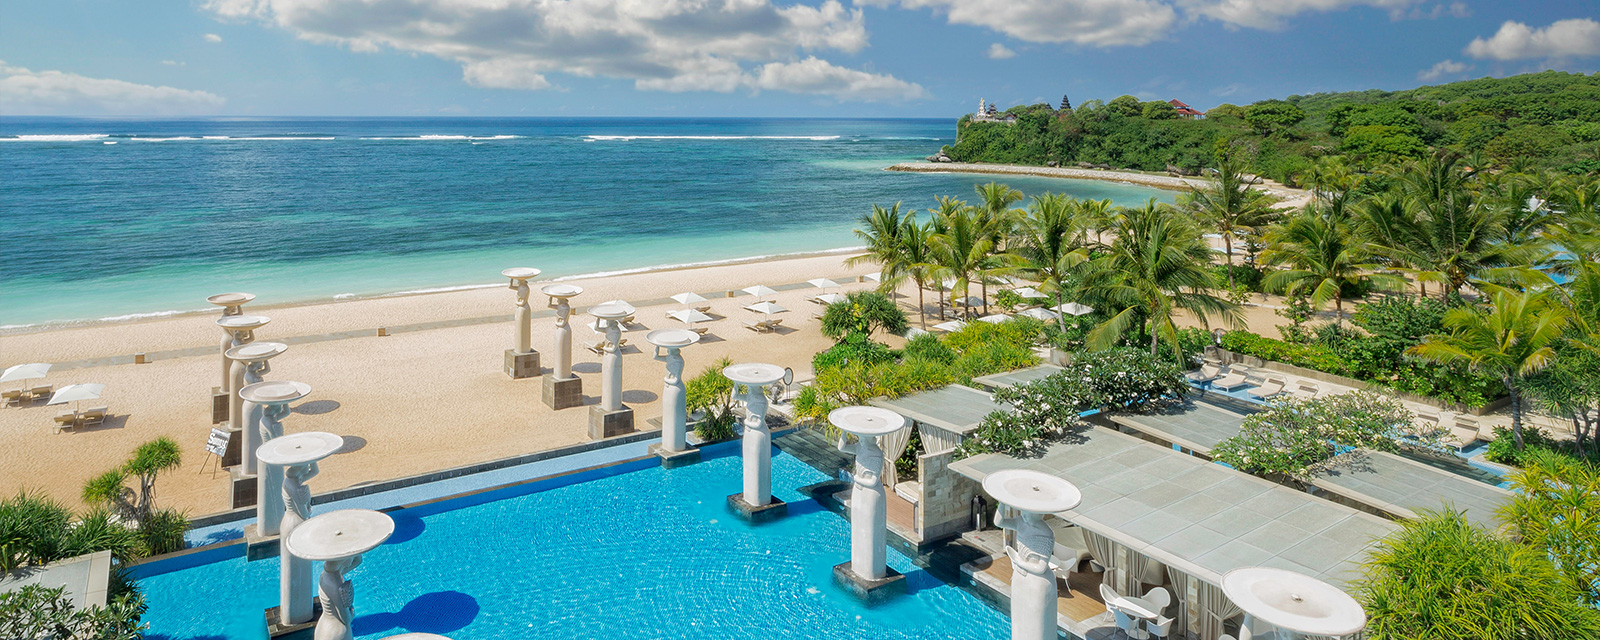 Luxury Beachfront Accommodation | The Mulia, Bali 